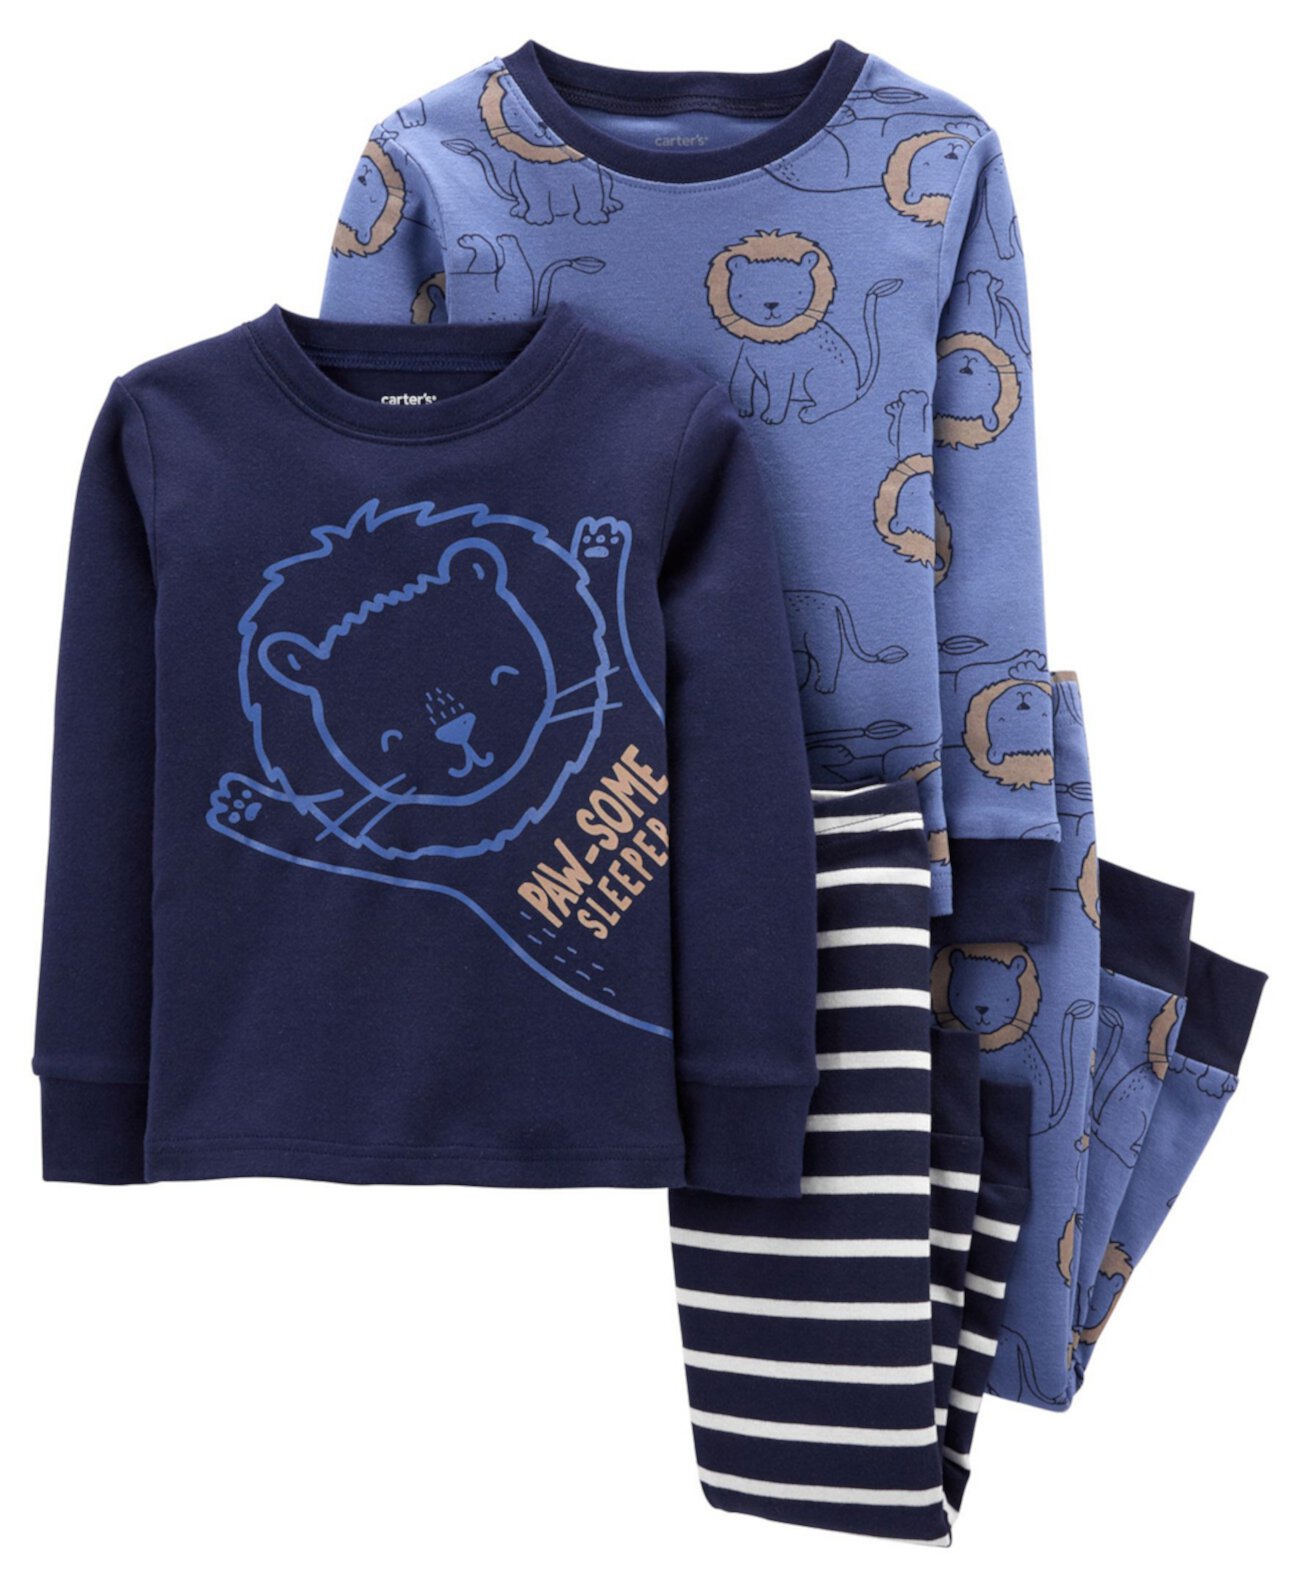 Хлопковая пижама Lion Snug Snug Fit для маленьких мальчиков, комплект из 4 предметов Carter's